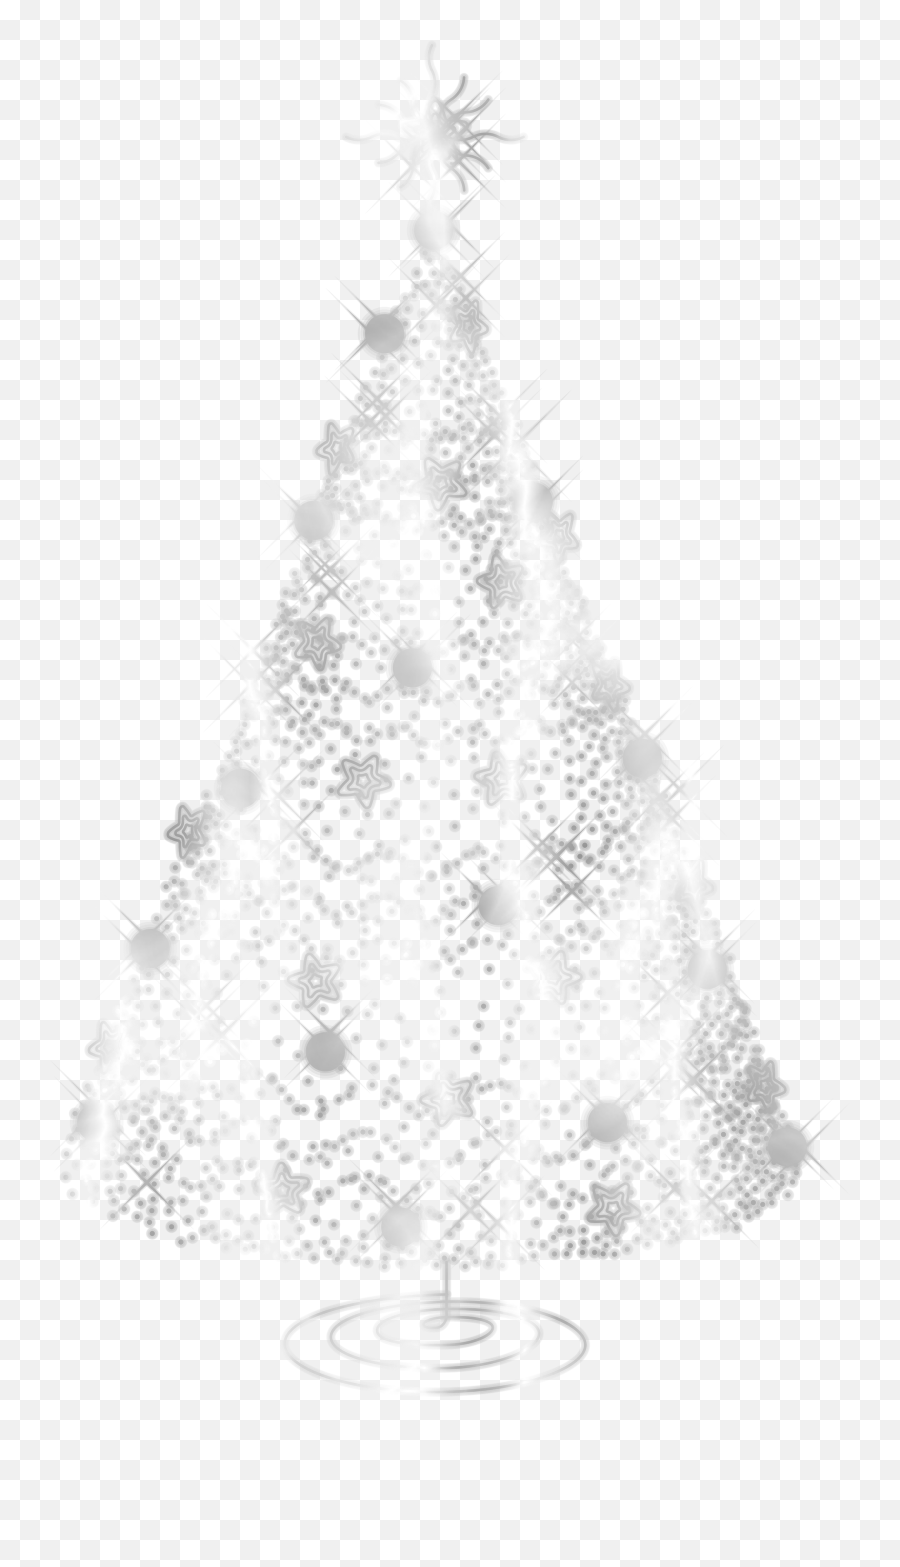 Brcc Christmas Ball - Christmas Tree Wallpaper Iphone 6 Png,Christmas Ball Png